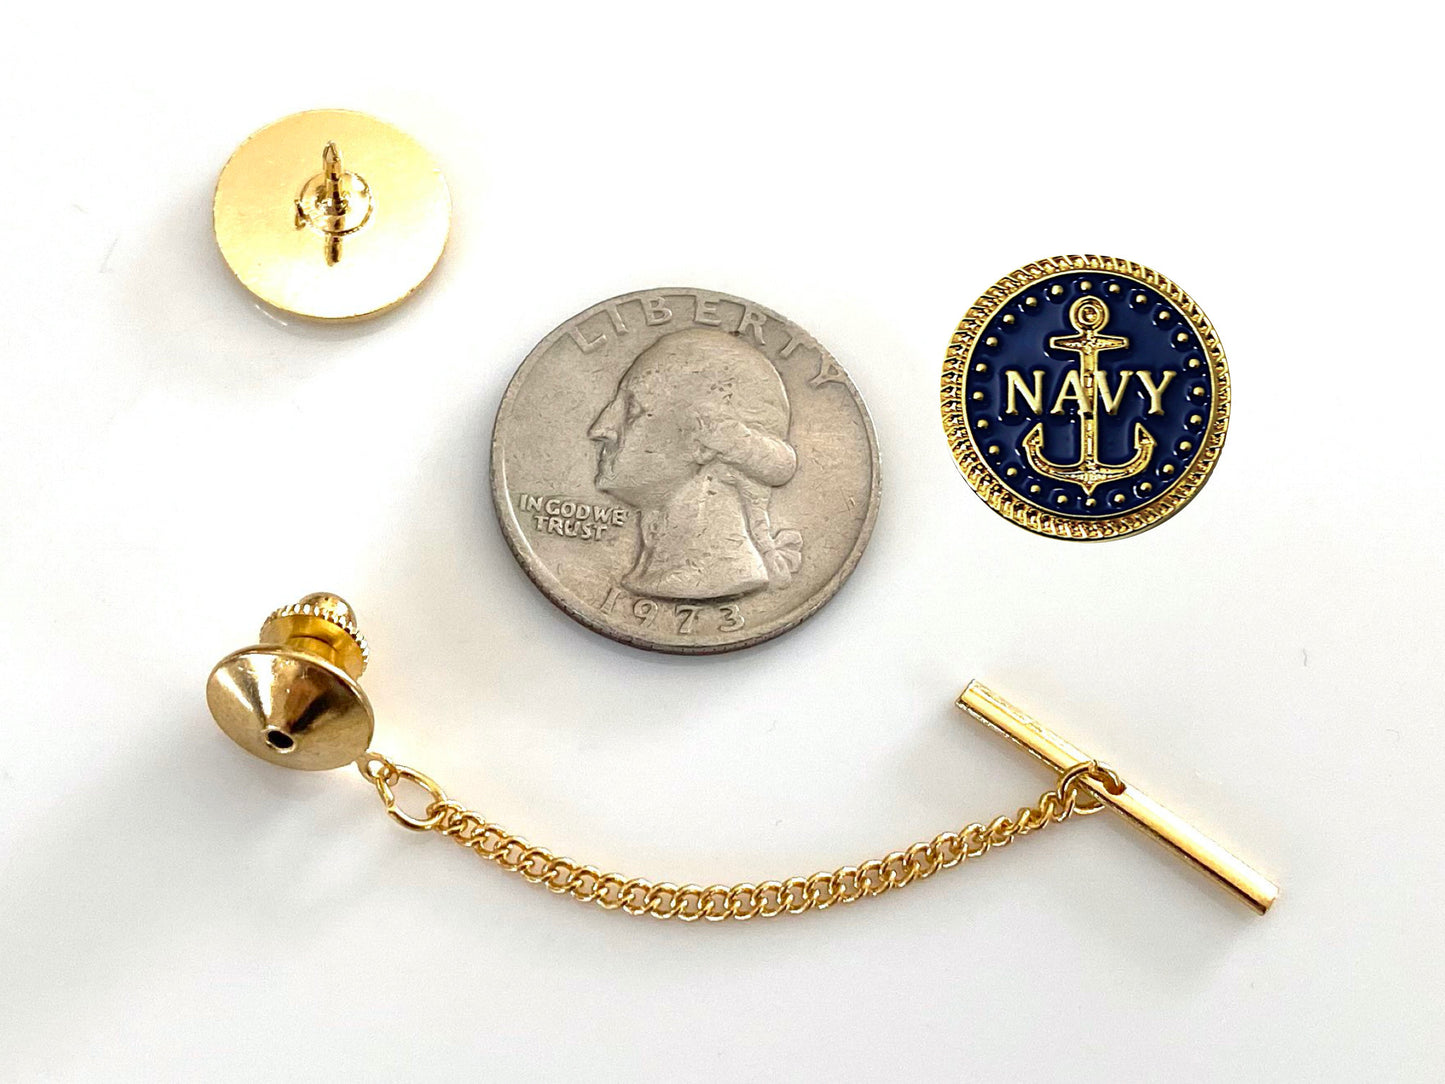 Navy Gold Tie Tack